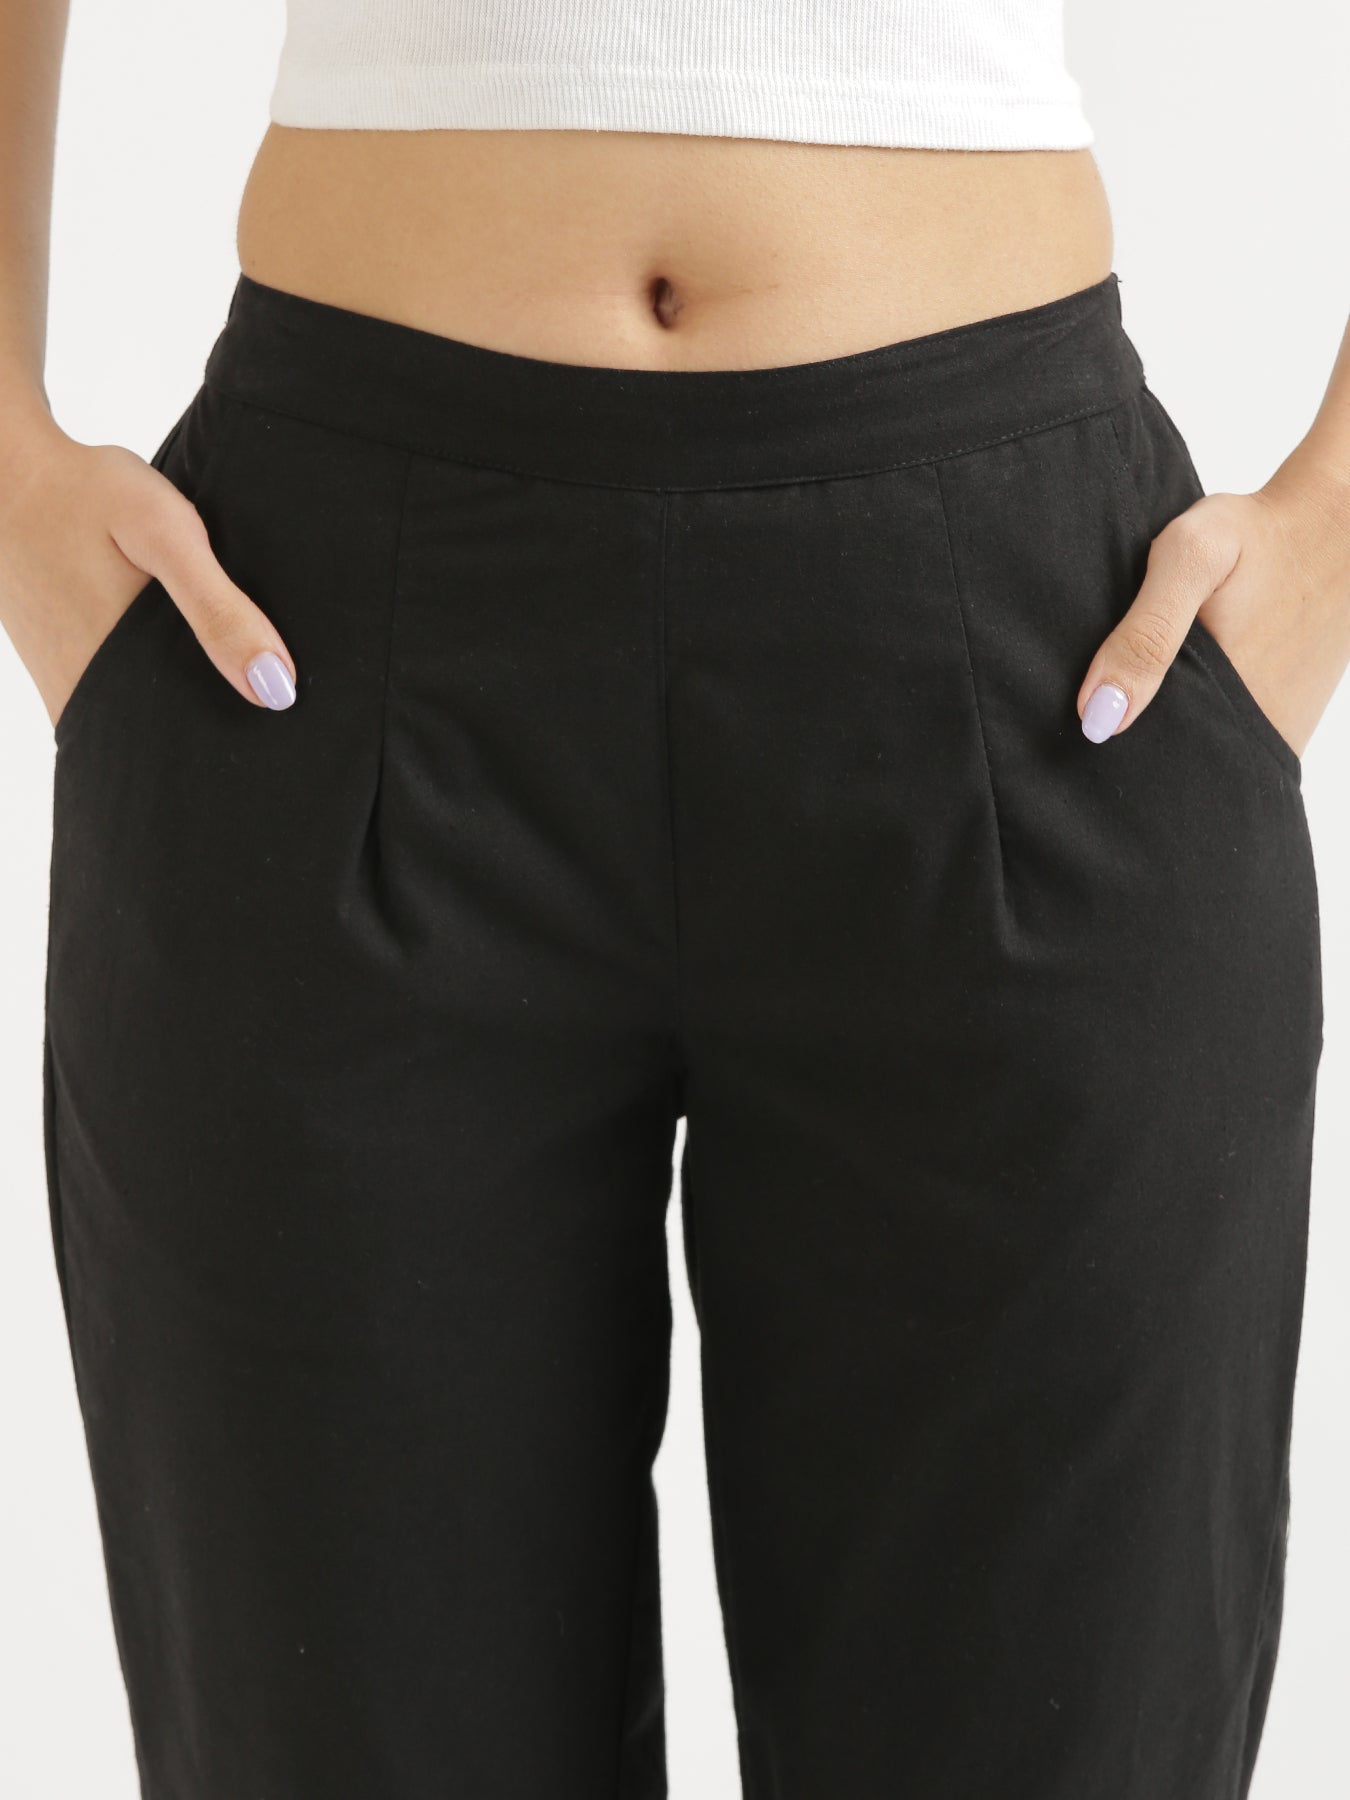 Buckle-detail Dress Pants - Beige - Ladies | H&M US